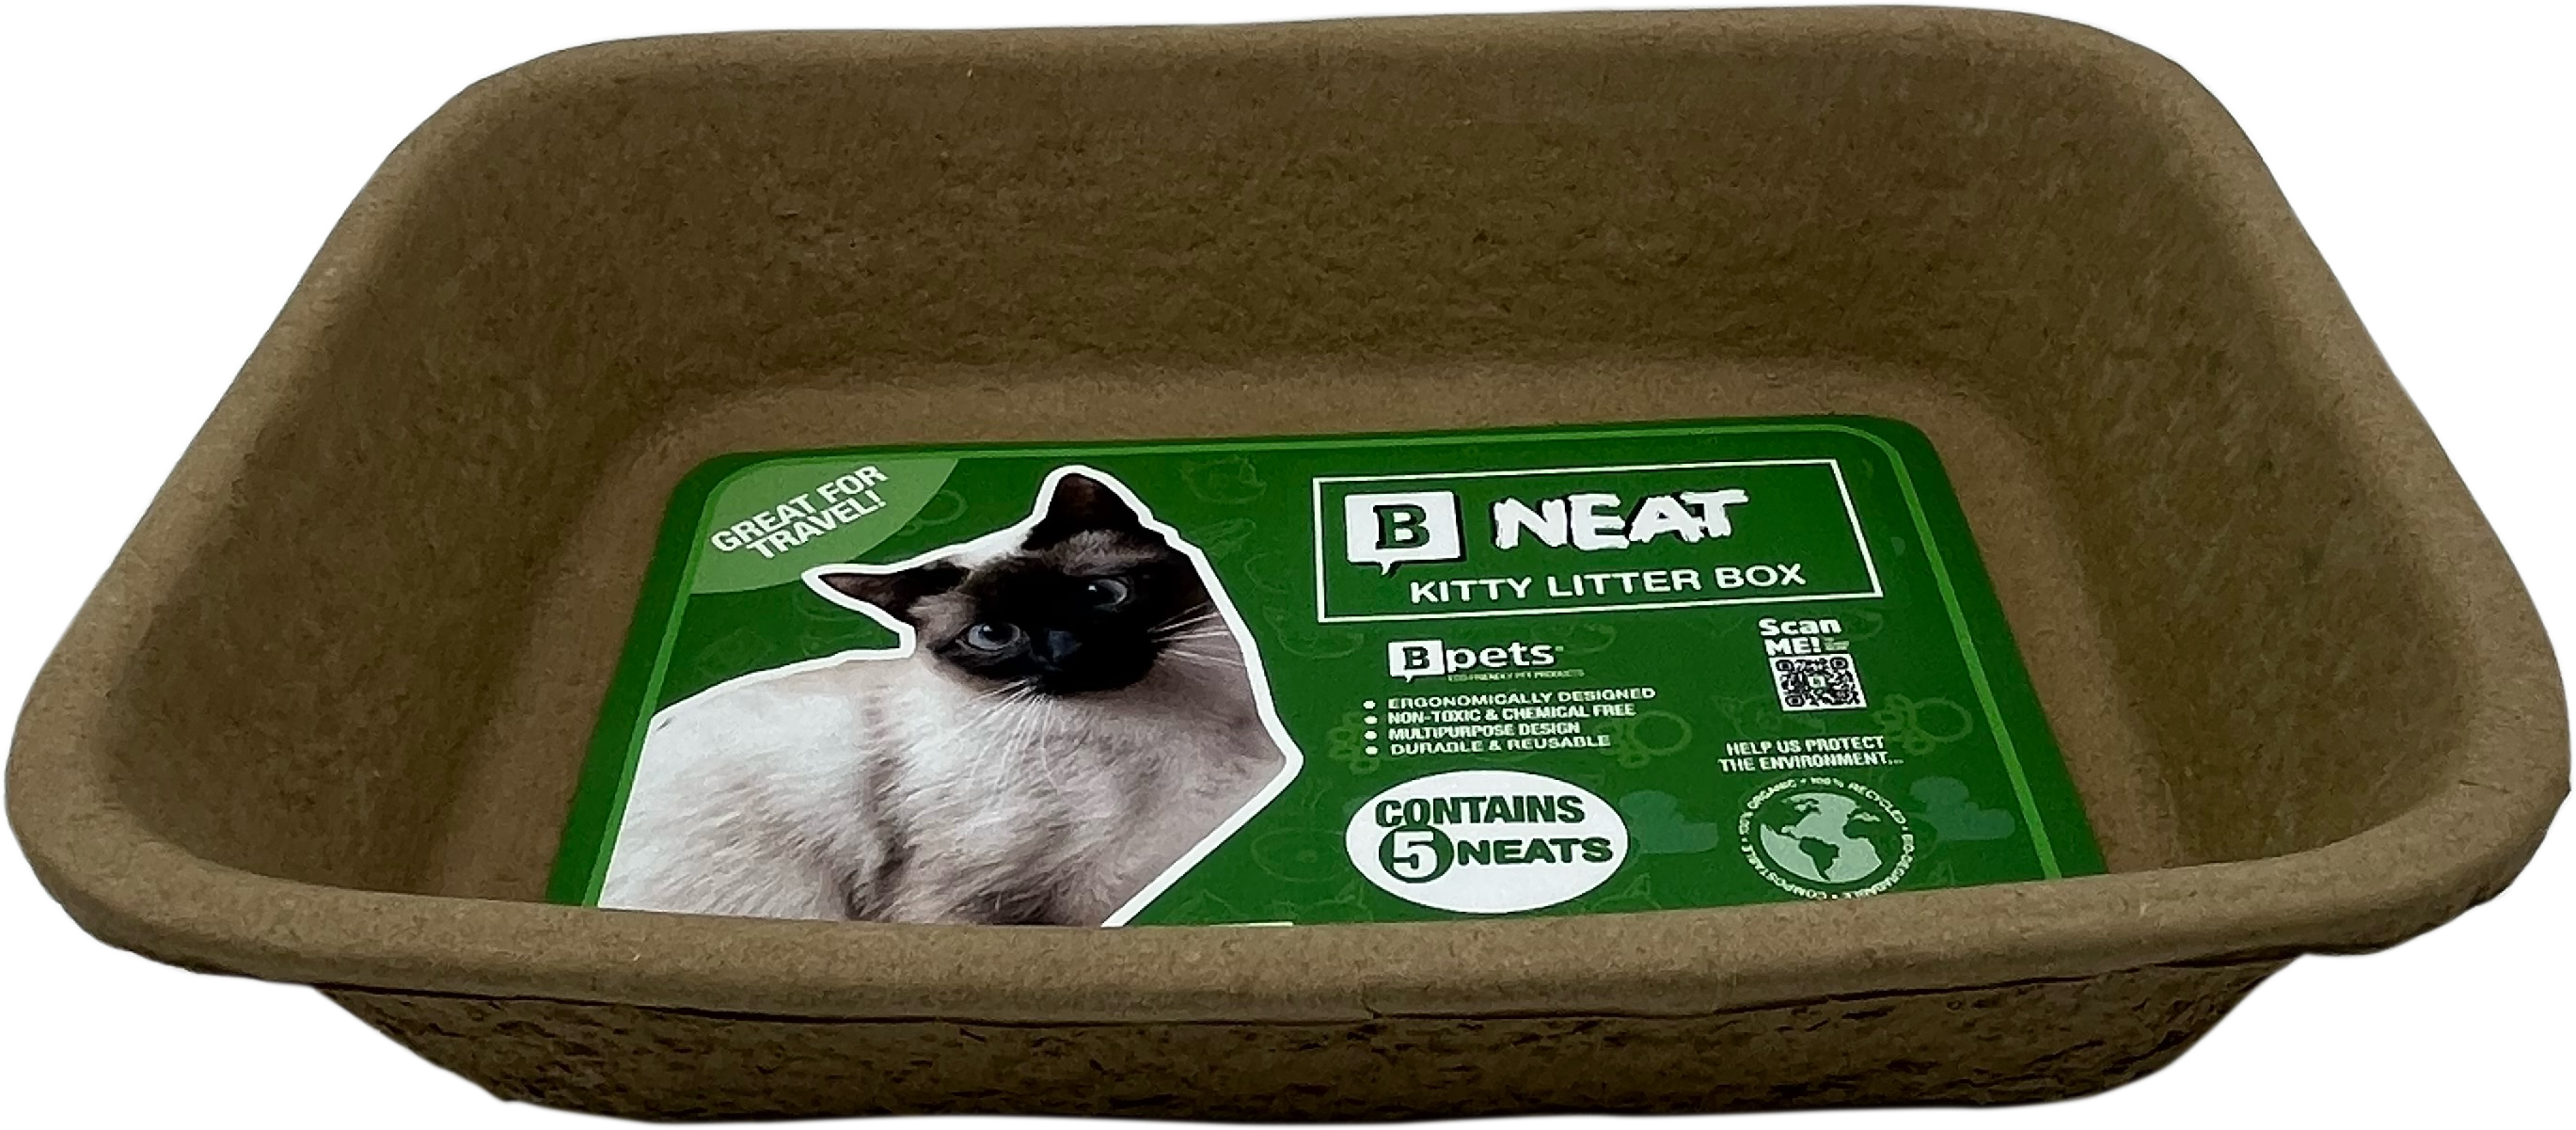 B Neat - Kitty Litter box-Pet's Choice Supply